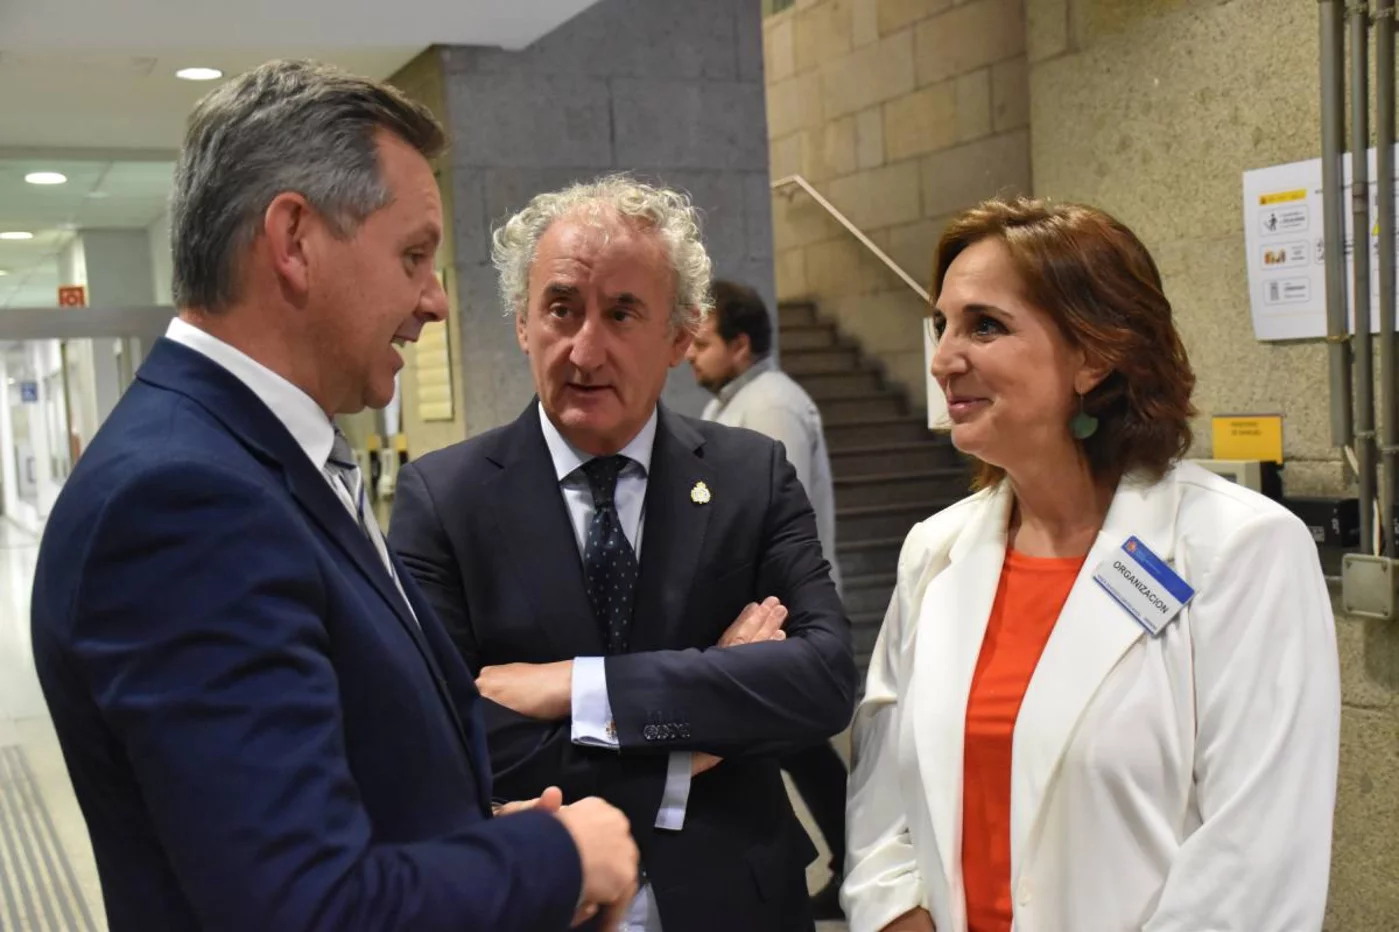 El ministro de Sanidad conversa con Tomás Cobo, presidente de la OMC, y Remedios Martín, presidenta de Semfyc, en la sede ministerial. Foto: MINISTERIO DE SANIDAD.